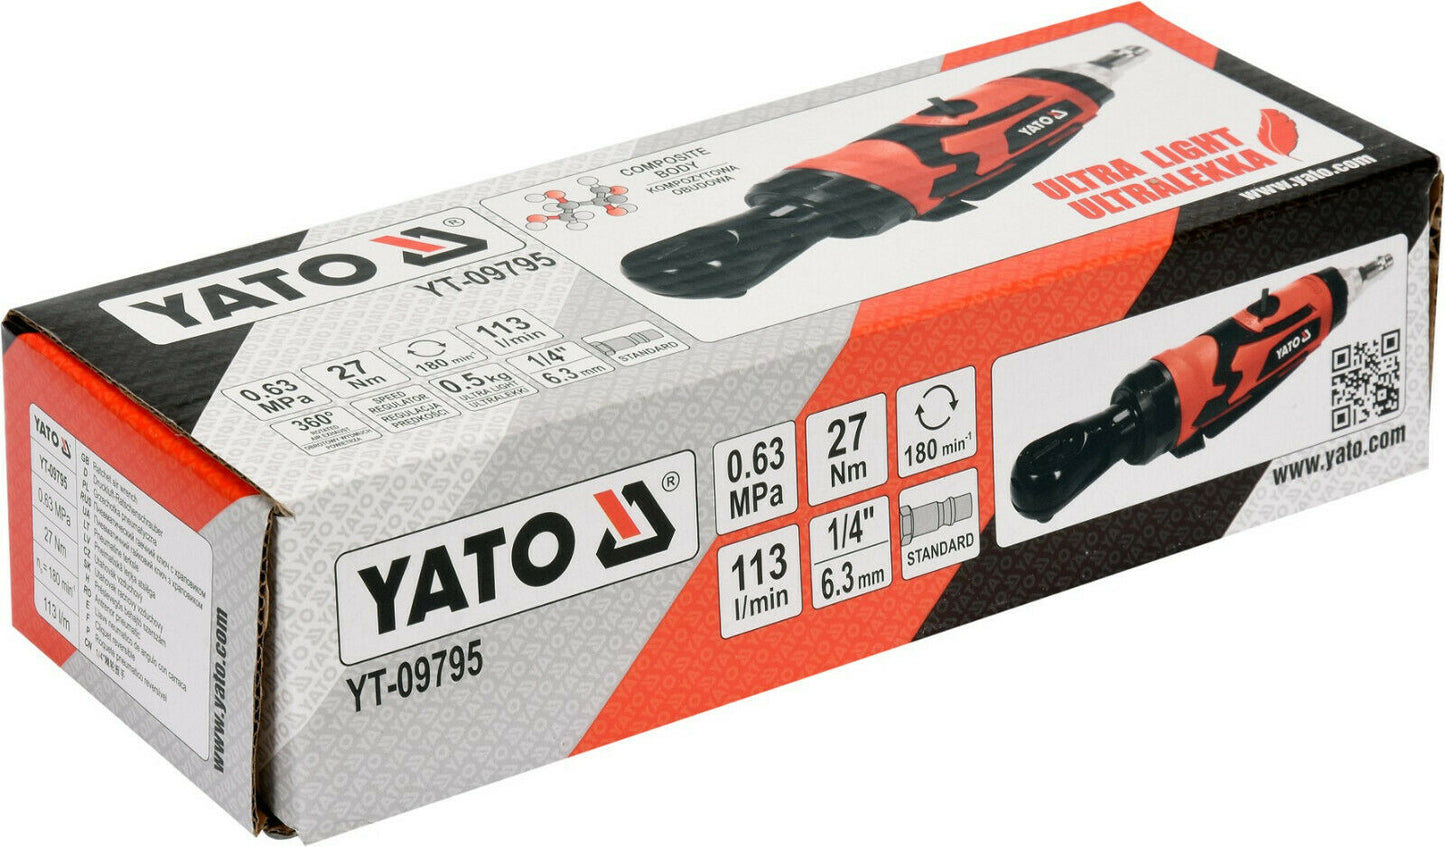 Yato YT-09795 Druckluft Ratschenschrauber Ratsche Schrauber Kfz Werkzeug 1/4"